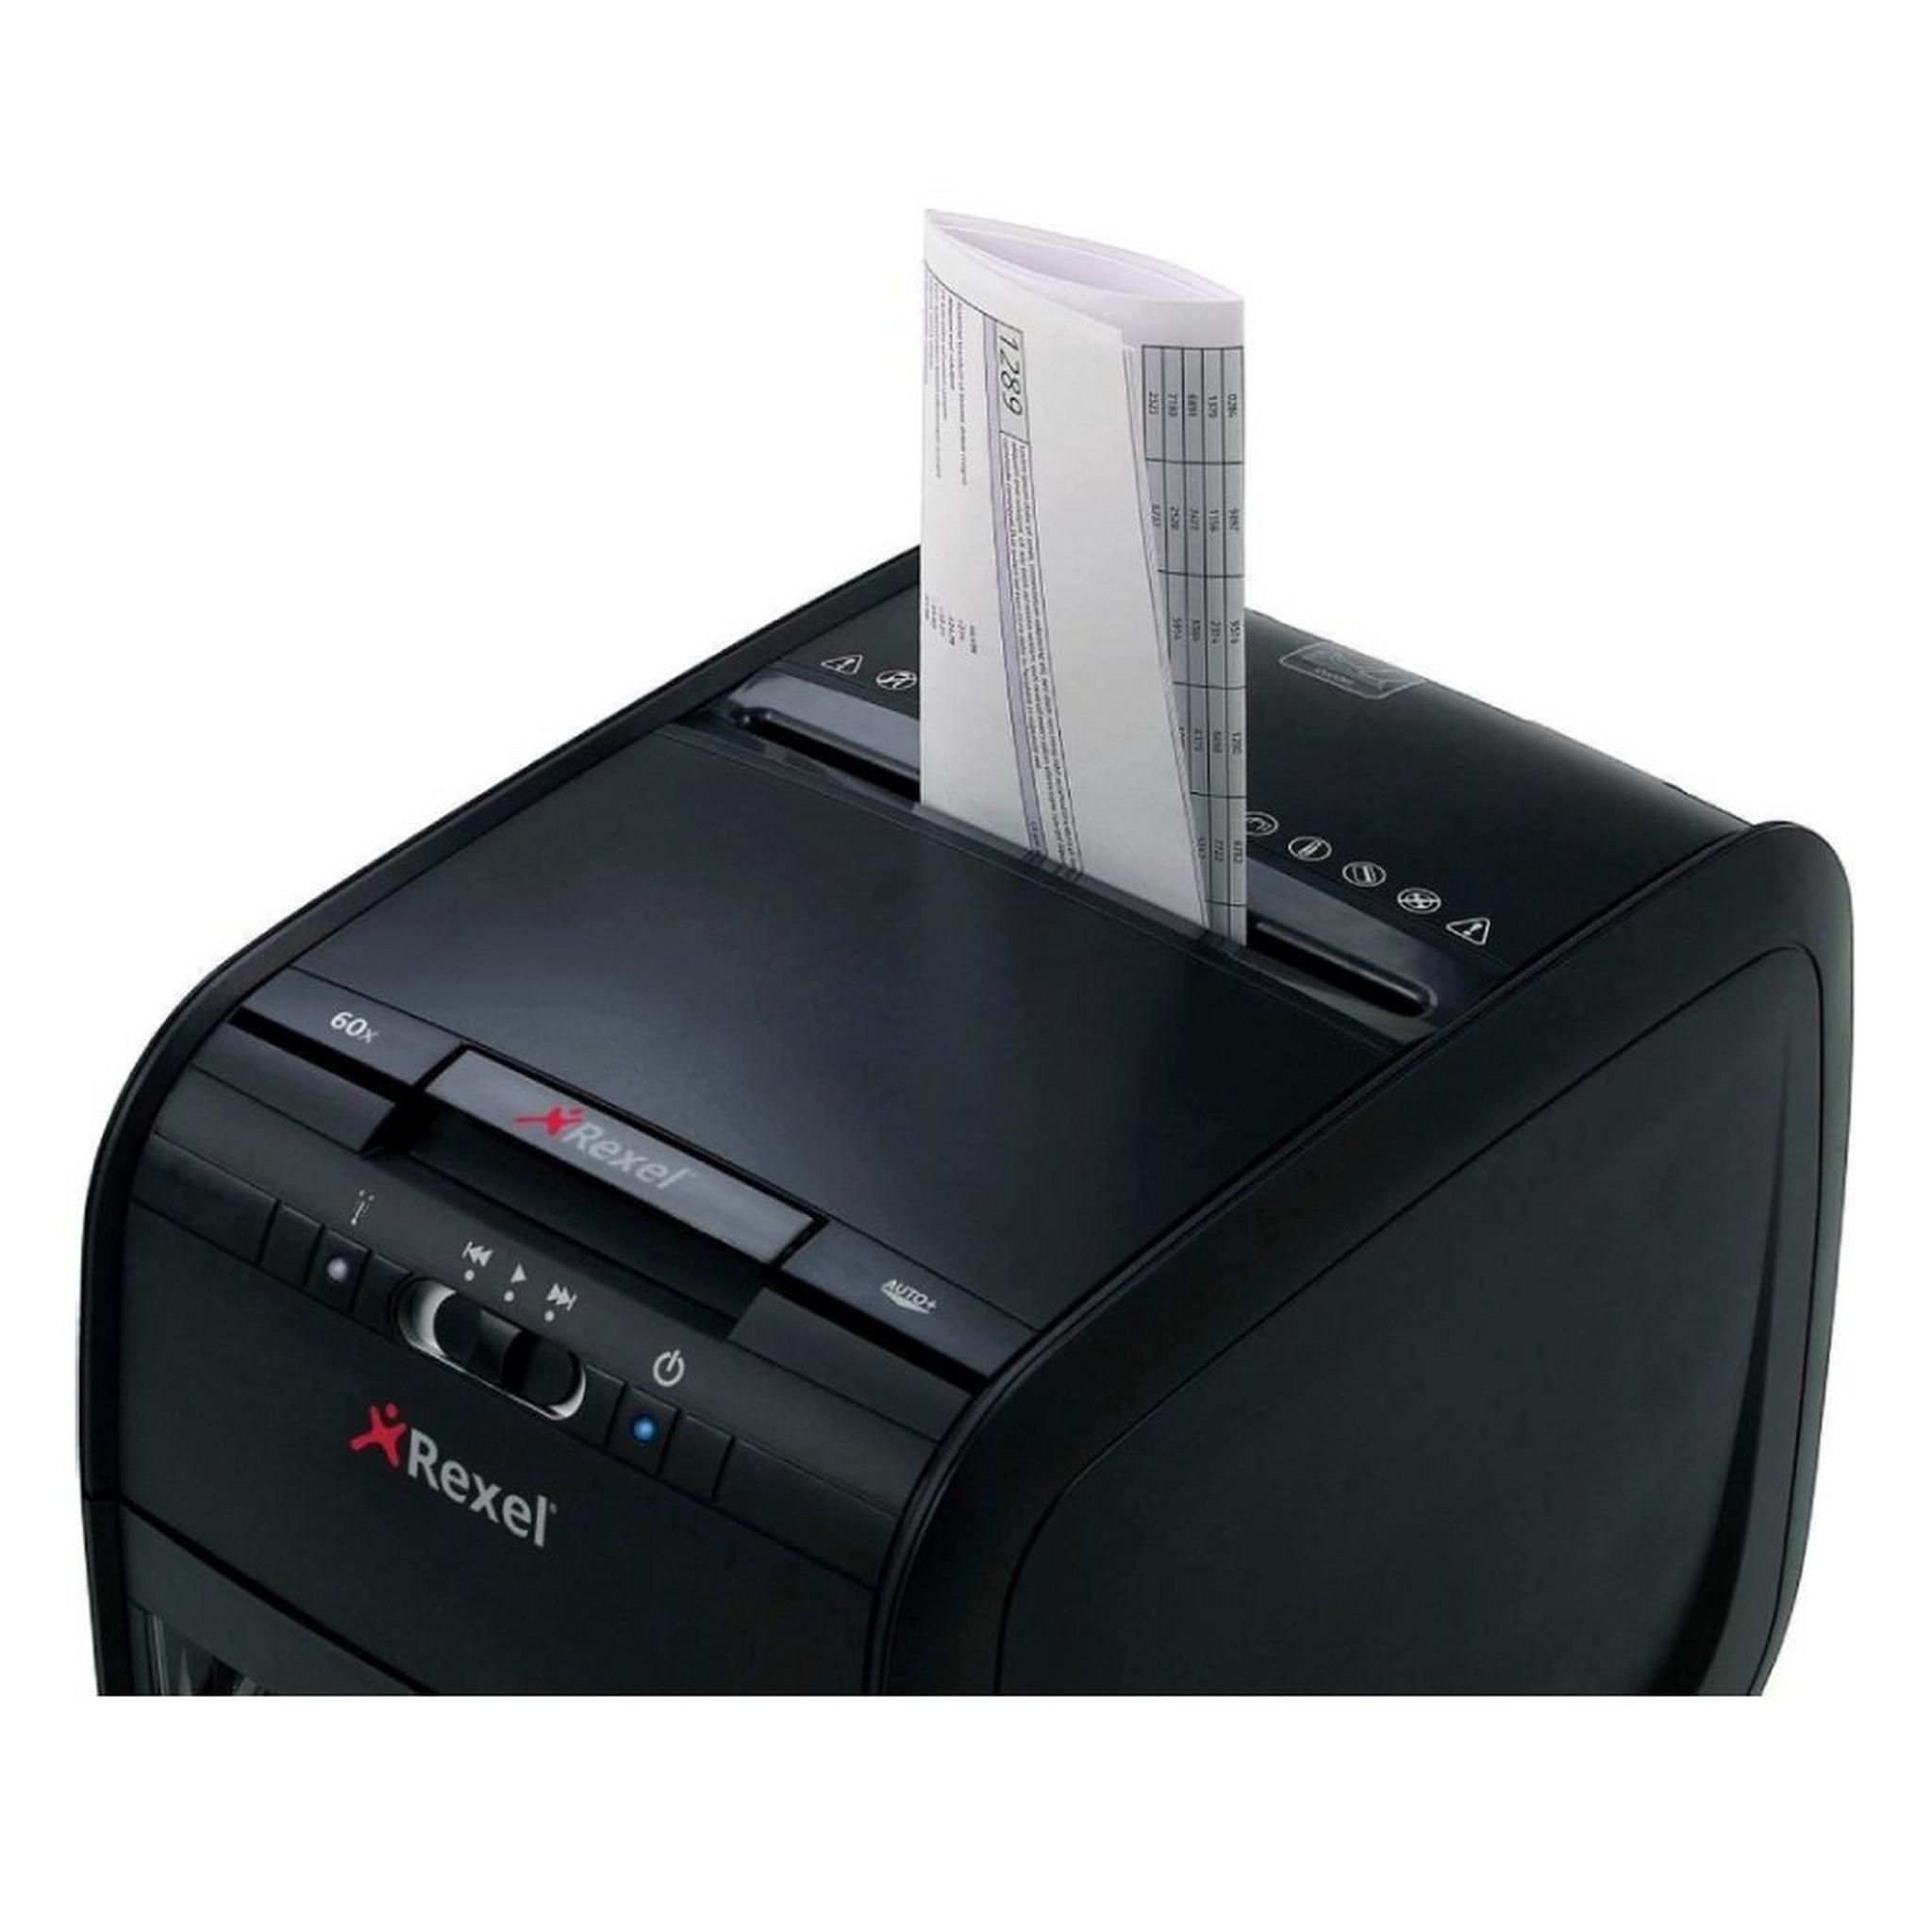 آلة تقطيع الورق ريكسيل أوتو بلس ٩٠ إكس - (2103080A)